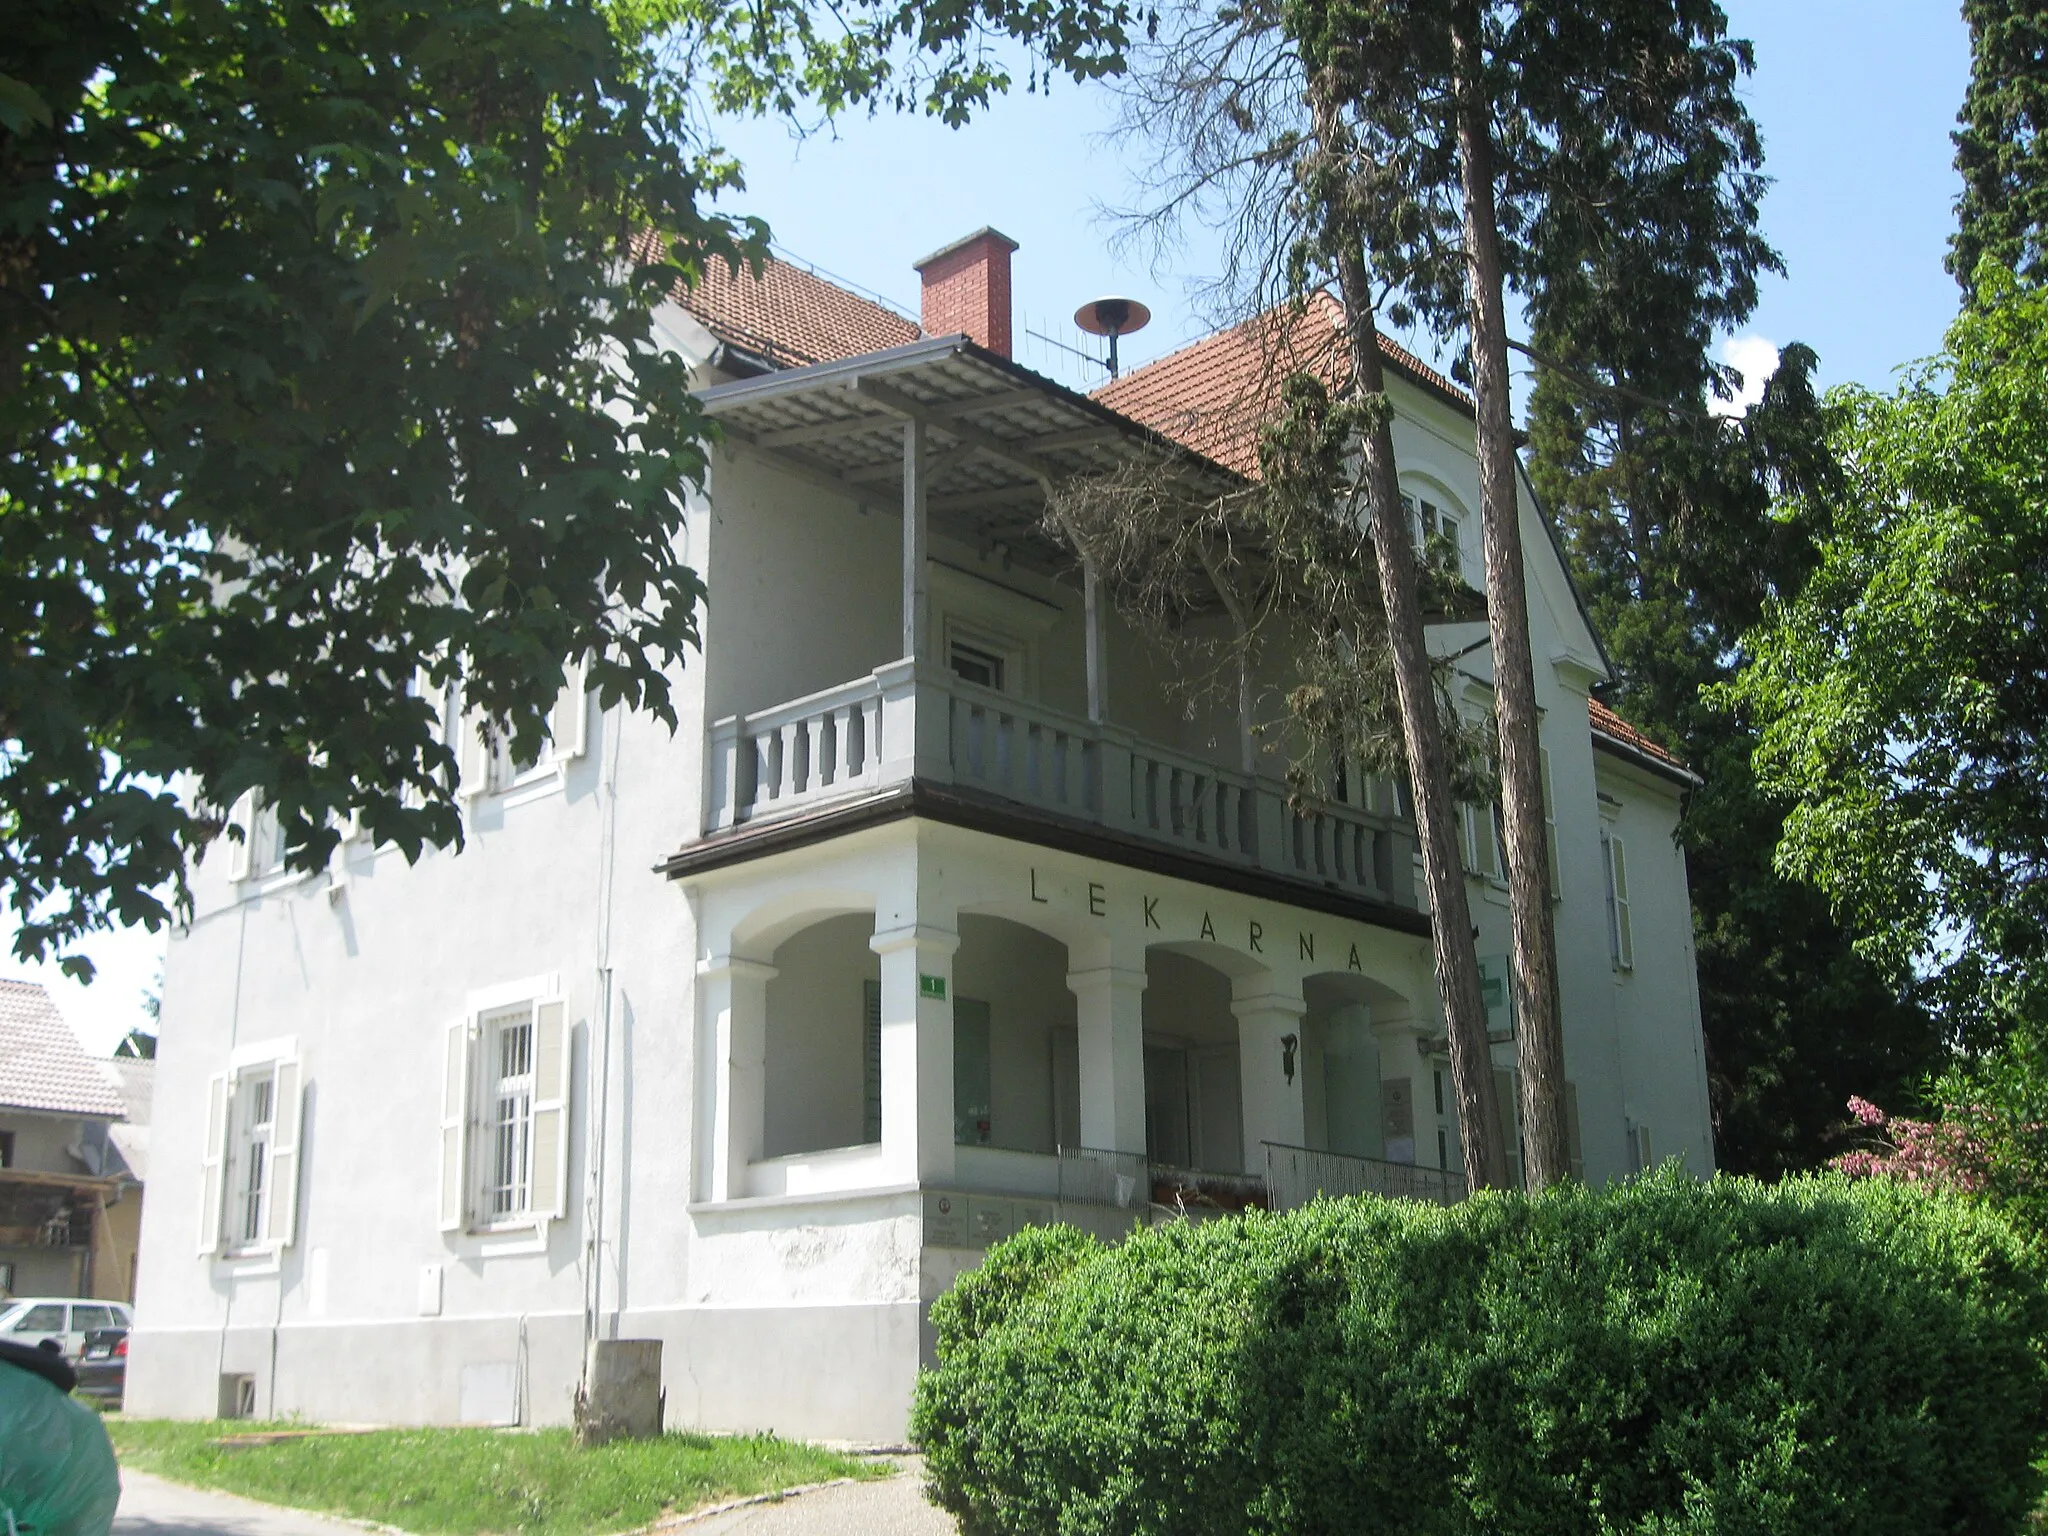 Photo showing: Enonadstropno hišo s poudarjenim osrednjim rizalitom in vogalno verando pokriva dvokapna opečna streha. Zgrajena je bila na prelomu 19. in 20. stoletja.